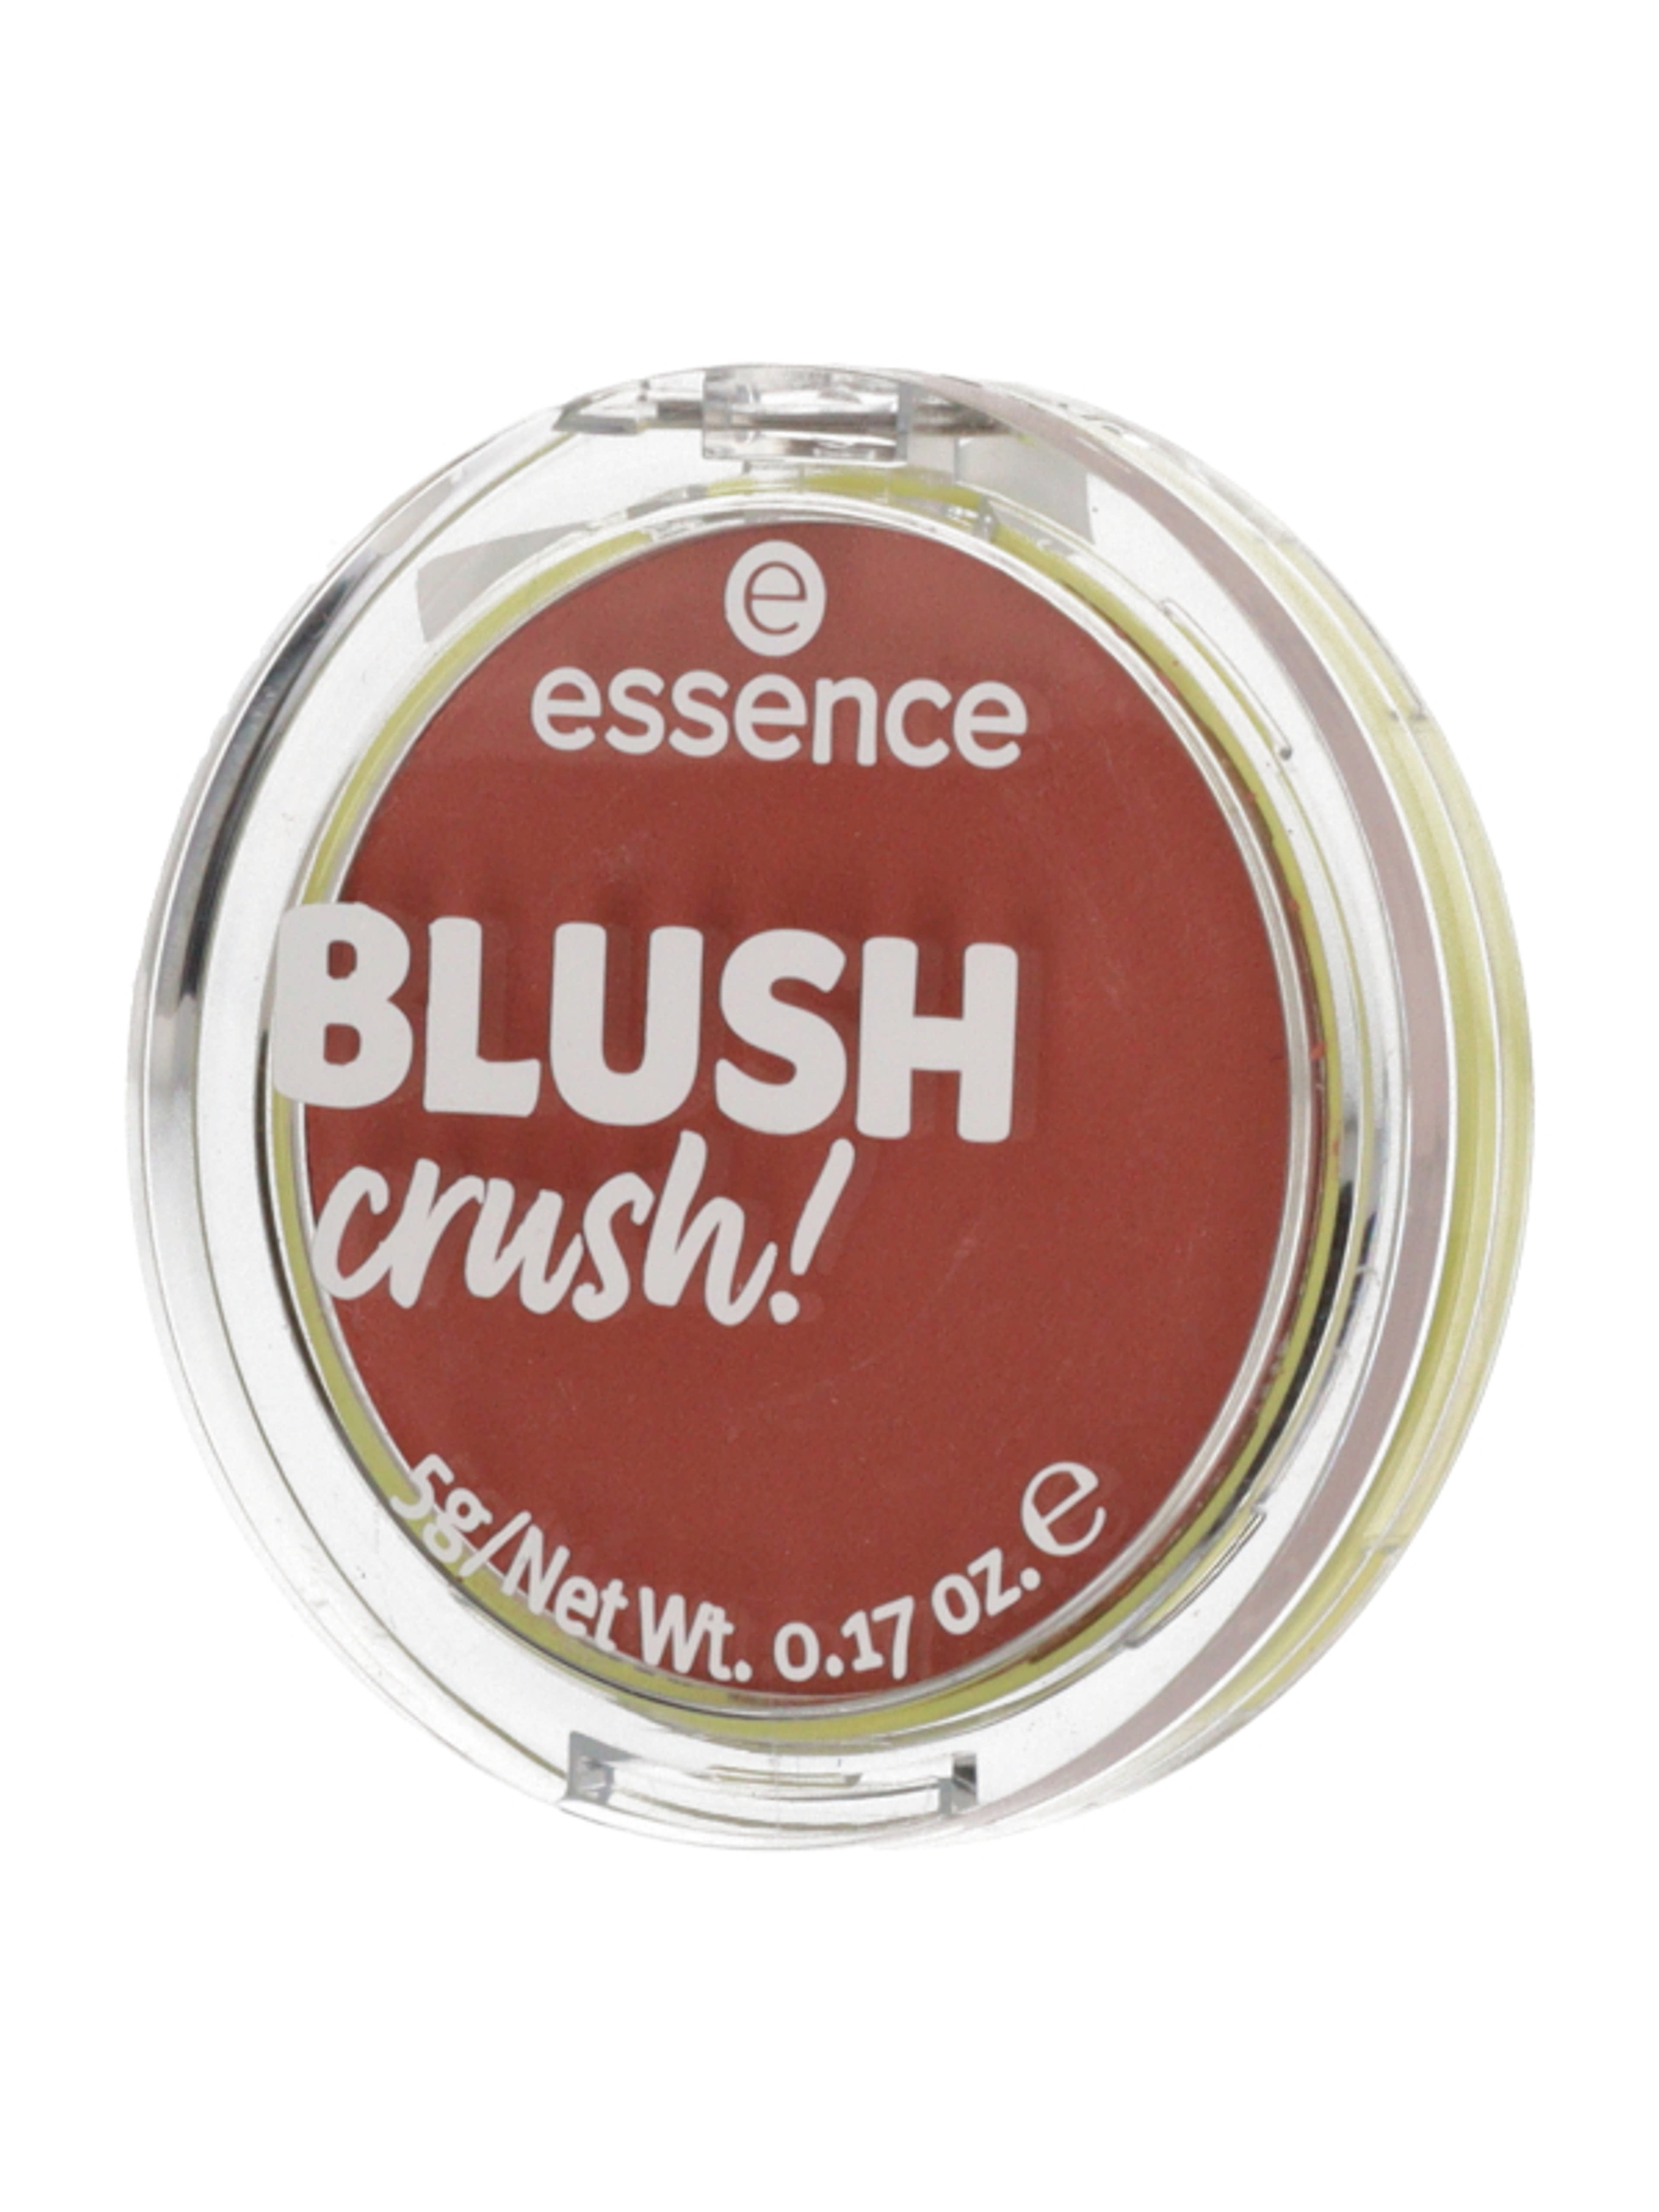 Essence Blush Crush! pirosító /20 - 1 db-4